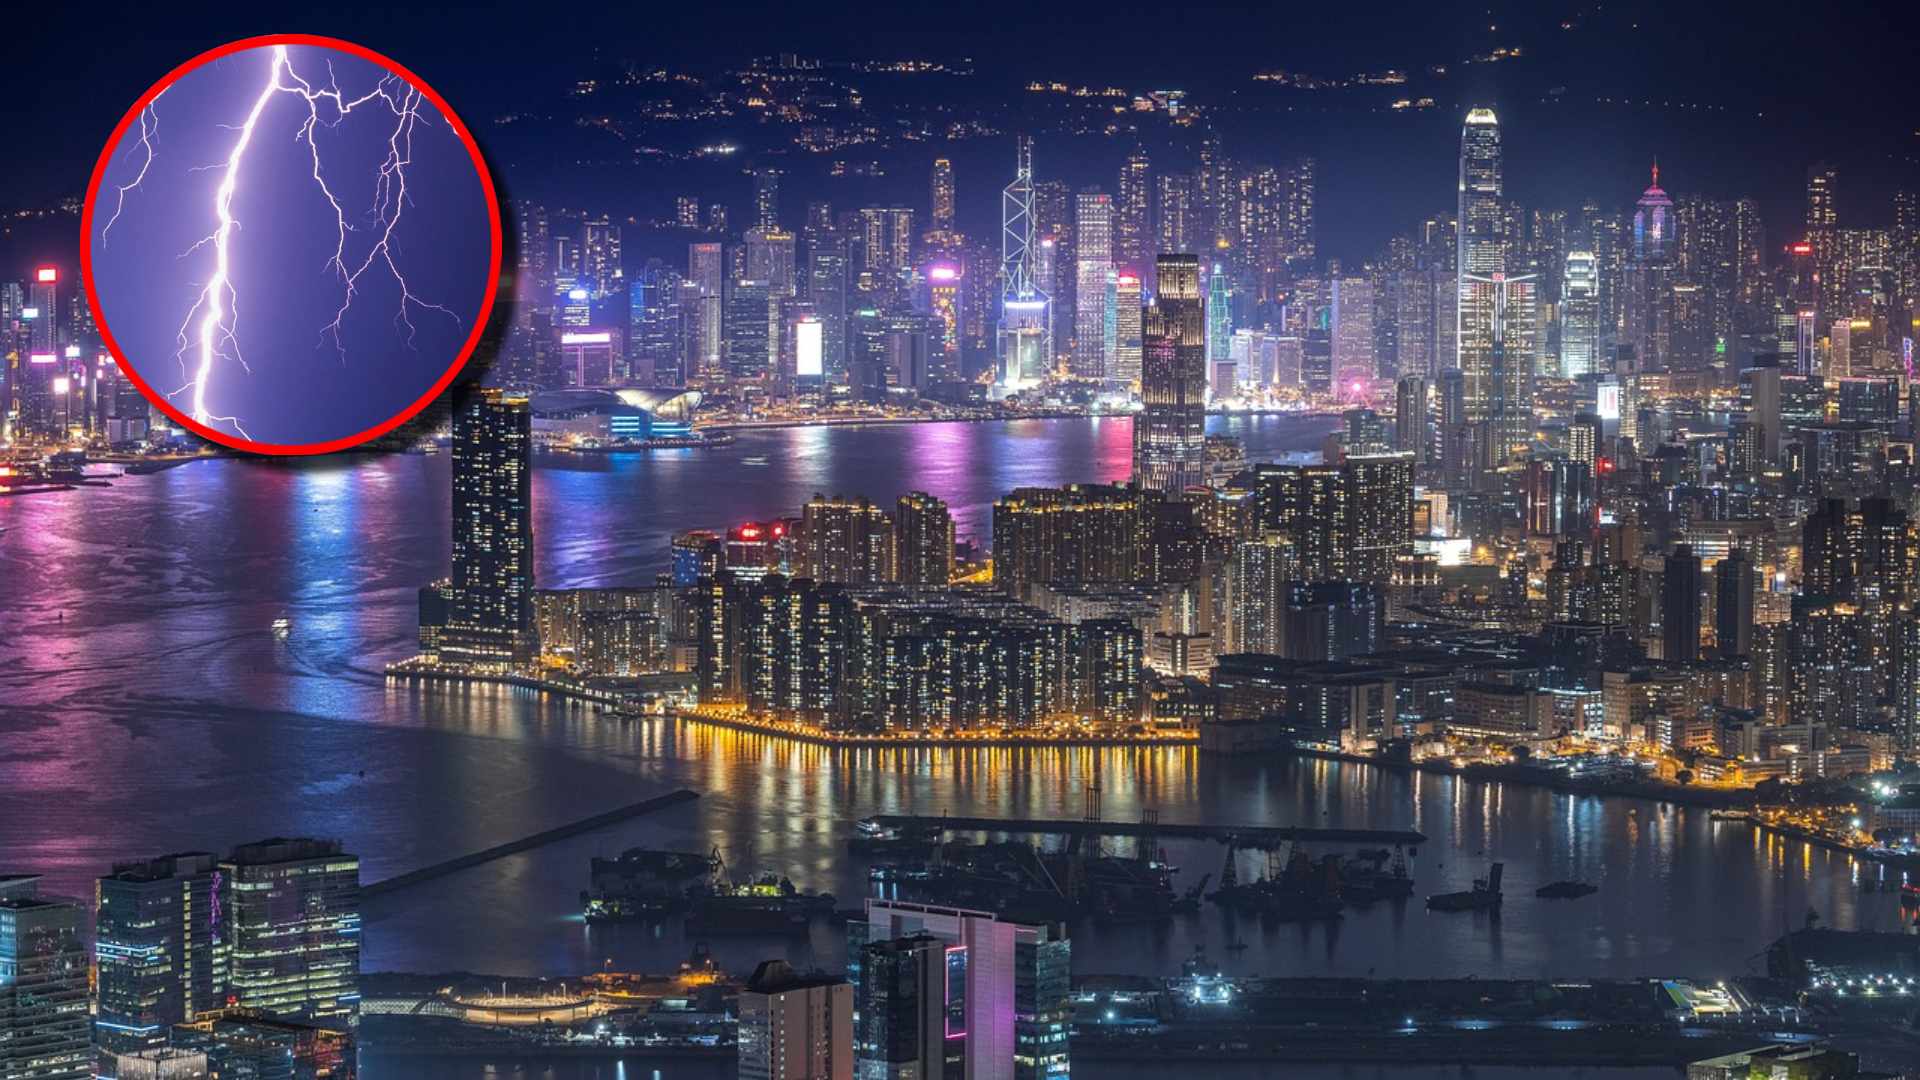 “Casi 10 mil rayos”: Registran fuerte actividad eléctrica en una sola noche en Hong Kong